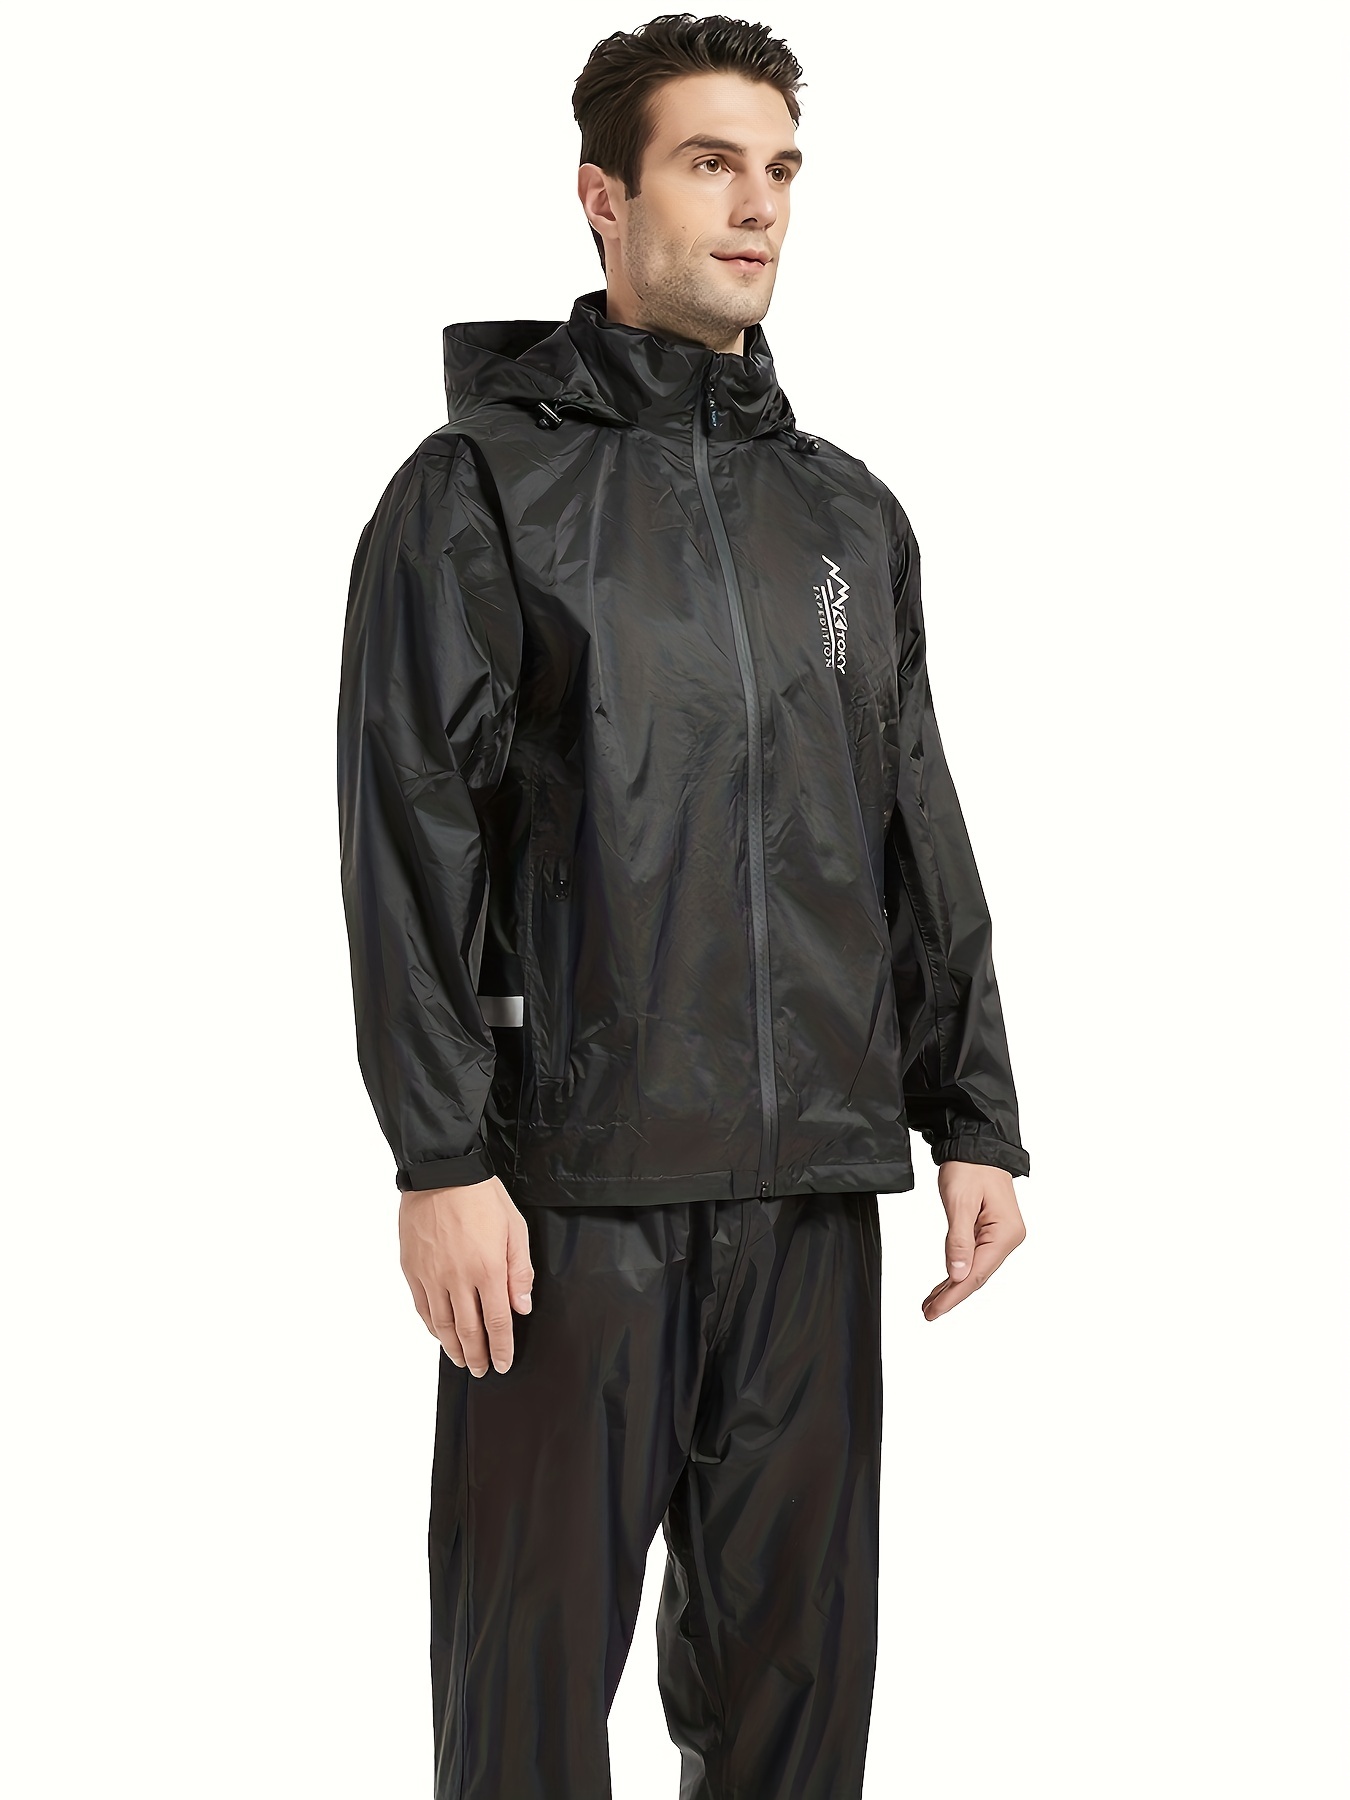 Rain Hiker Jacket Men's